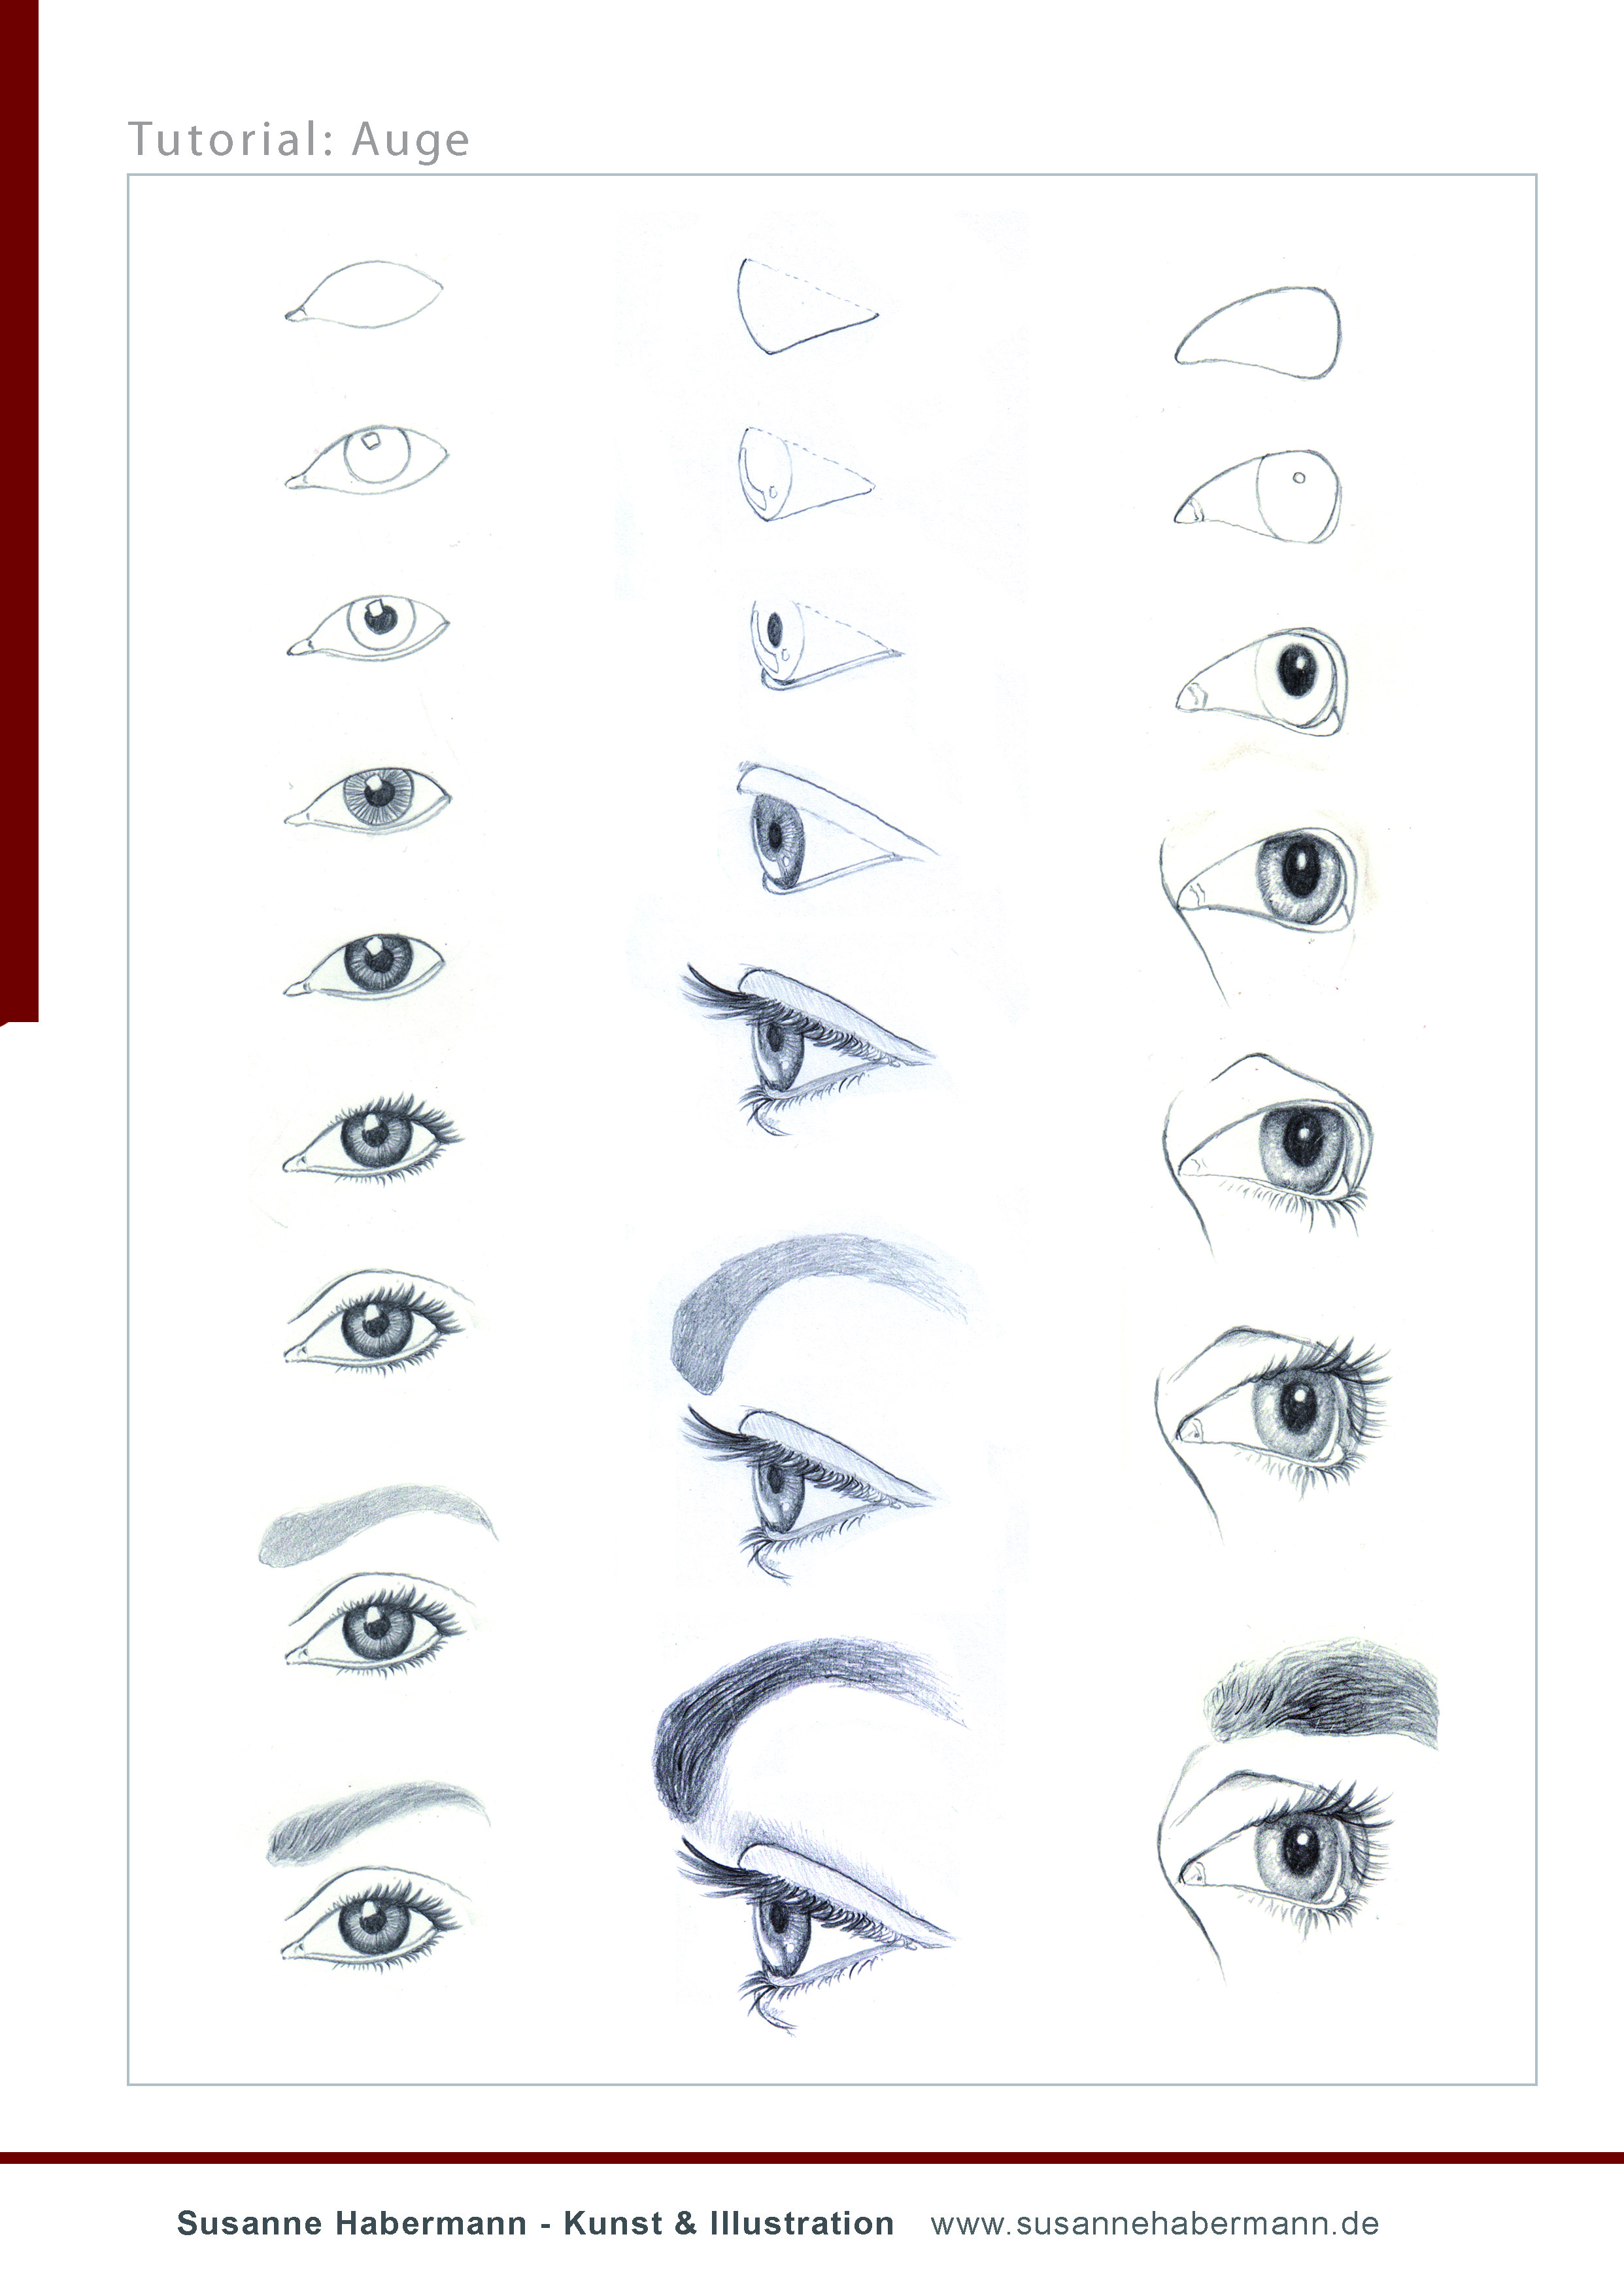 Tutorial Auge - Auge in verschiedenen Ansichten zeichnen - Frontal, Seitenansicht, schräg - Schritt für Schritt -  Susanne Habermann Kunst & Illustration - Zeichnen lernen